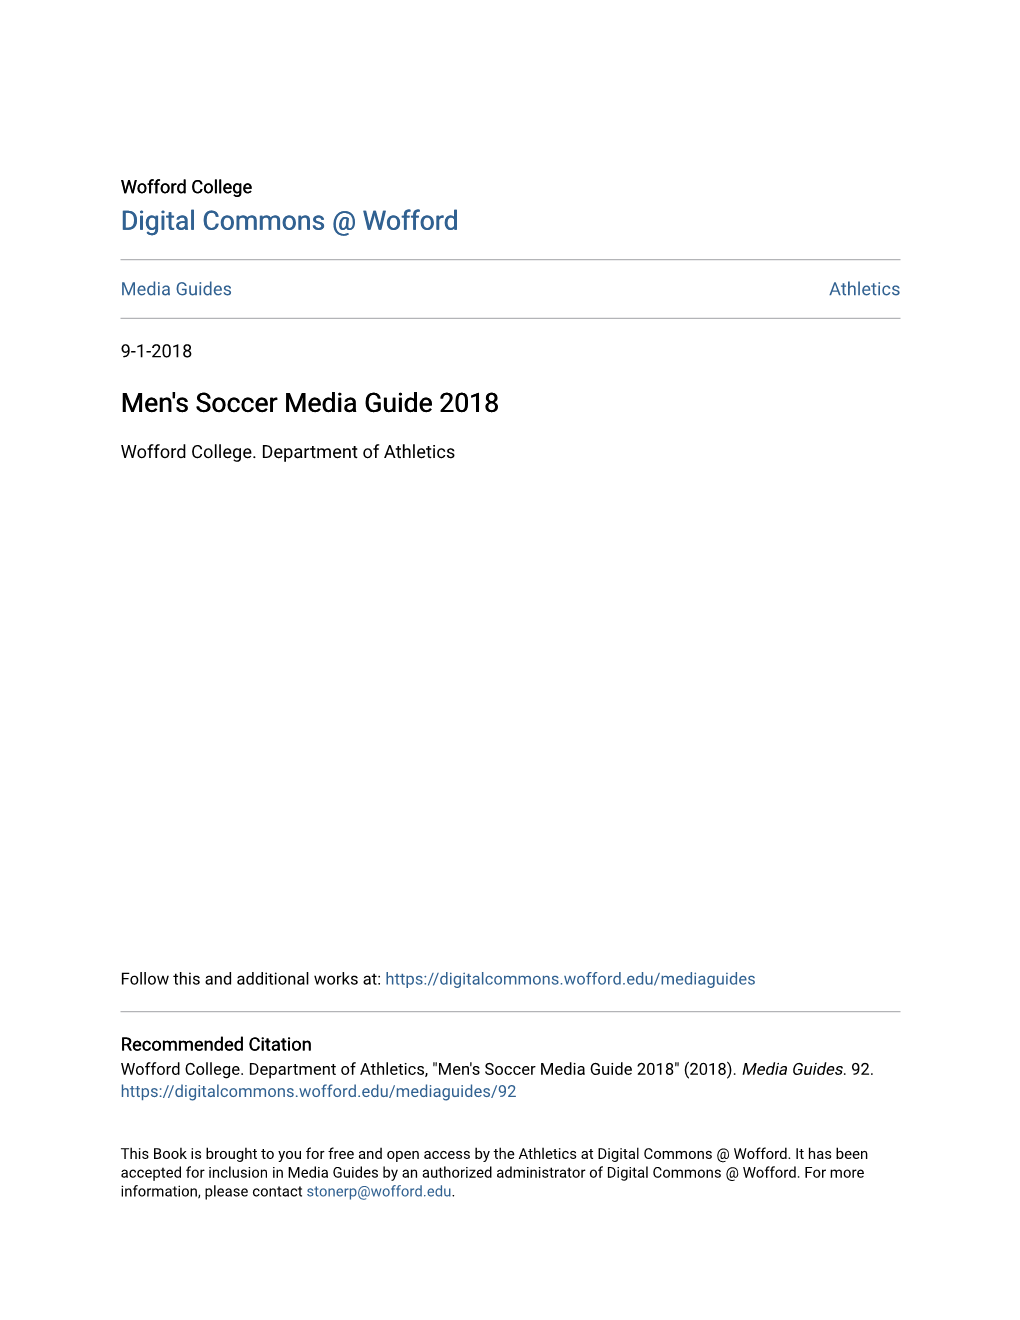 Men's Soccer Media Guide 2018